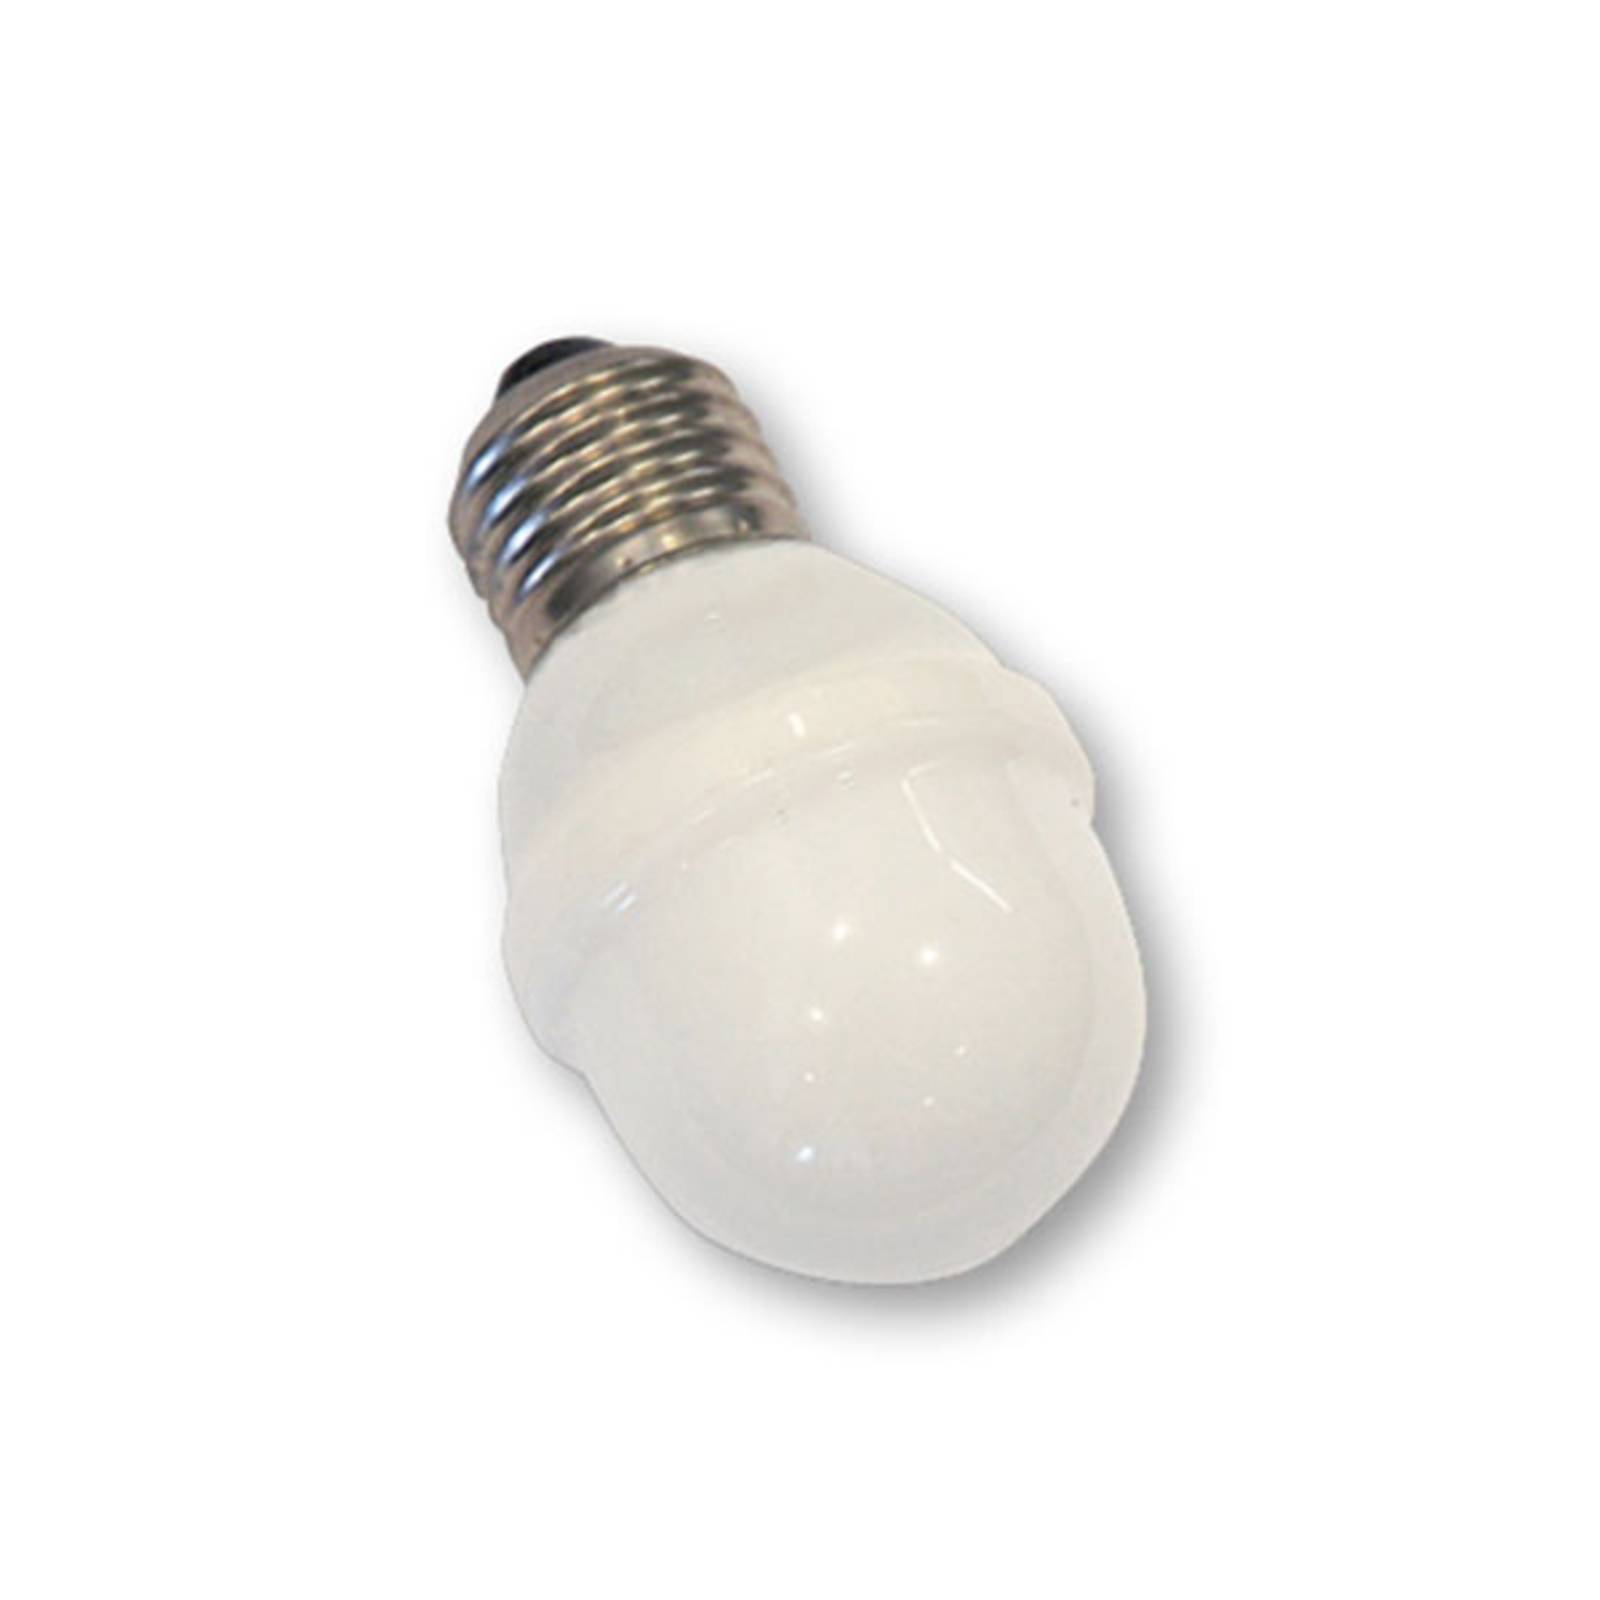 Image of Rotpfeil E27 ampoule balle golf 1 W 5,5 VA lumière du jour 9120017384328